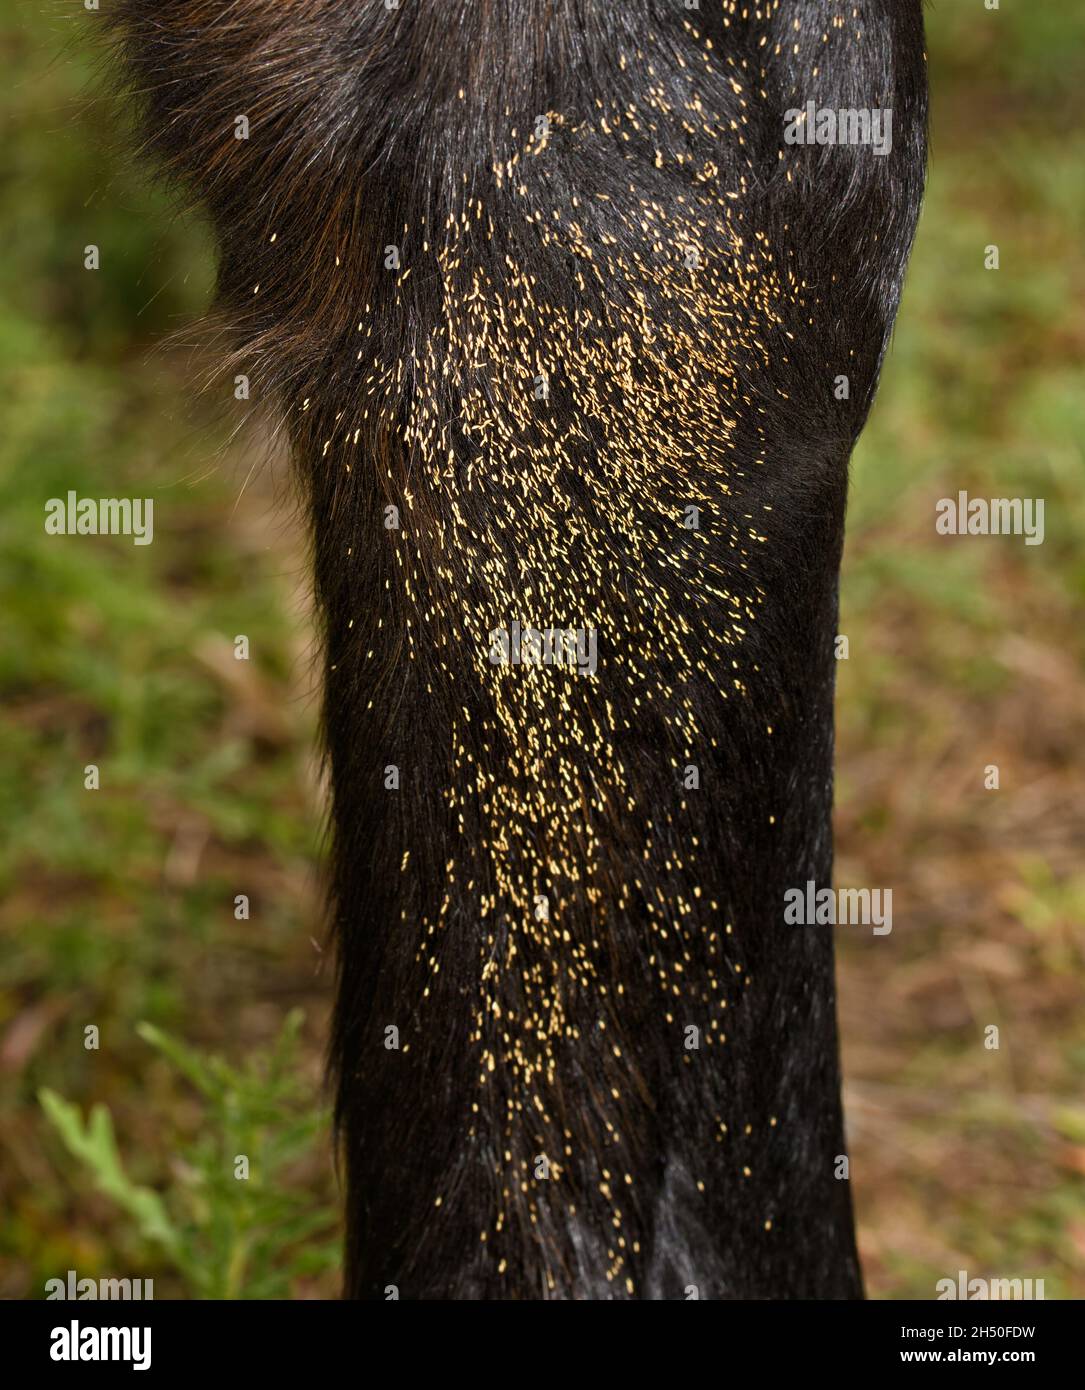 Œufs parasites de mouche à l'intérieur de la jambe avant inférieure d'un cheval, attachés aux cheveux Banque D'Images